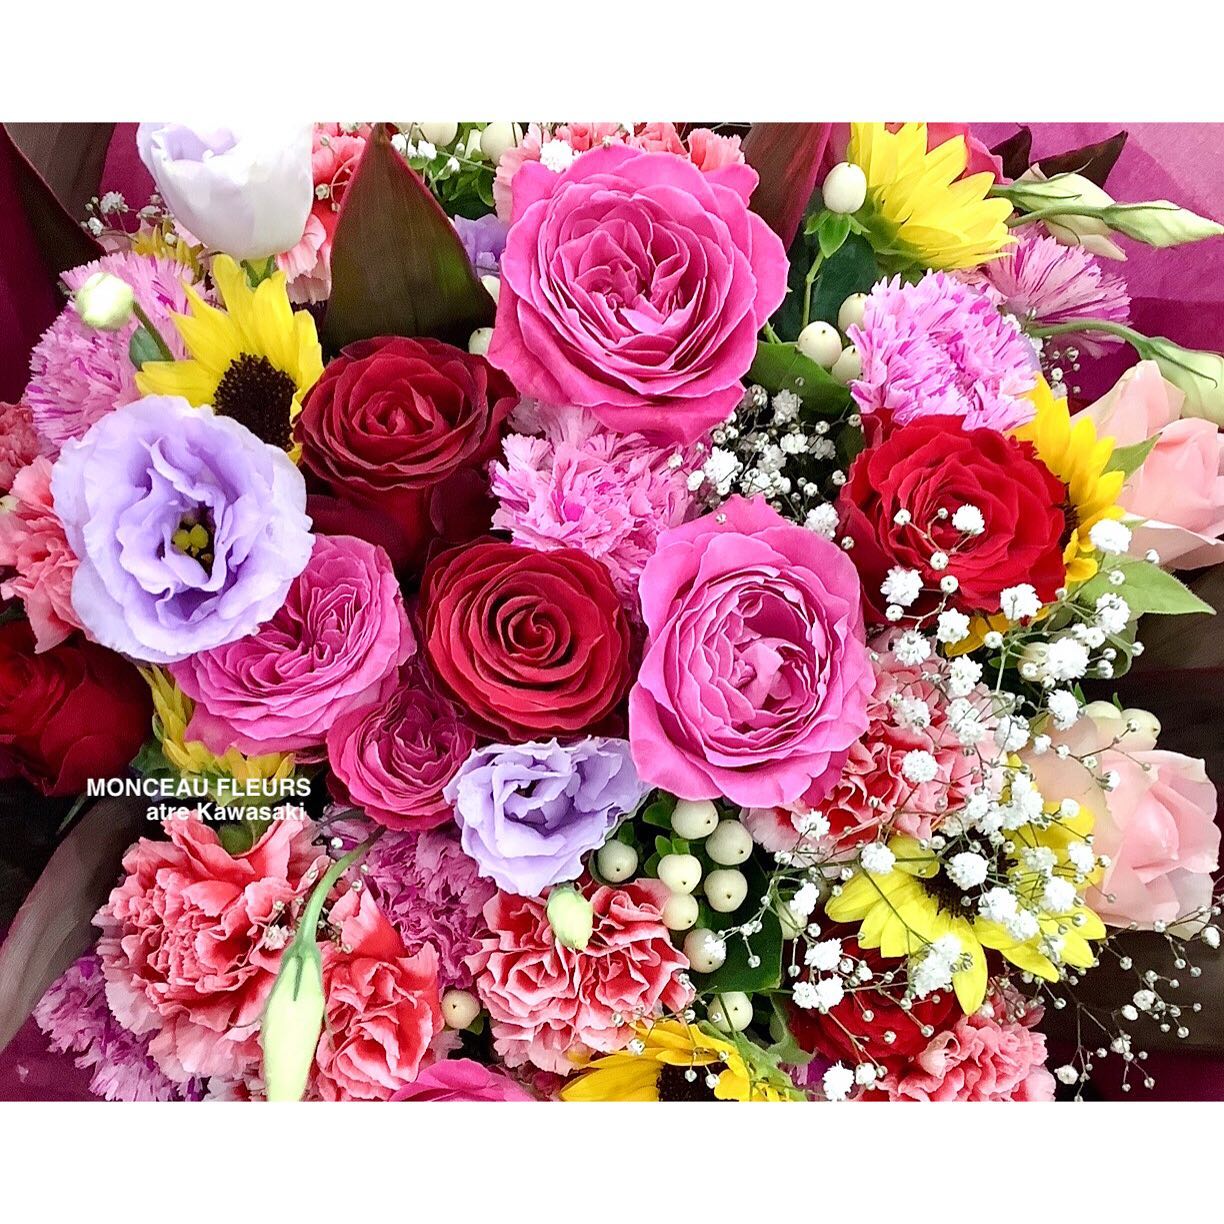 #圧巻のボリューム！！

お客様のリクエストは、
#お任せ！

女性の方のお誕生日、
レッドやピンク色のお花をたっぷりと

もたっぷりと、

差し色にイエローの をお入れして

と、 をプラスさせて頂きました^ ^

・

お花がたっぷり入ったブーケ♪

どうか
お客様が気に入って下さいました様に^ ^

・

ご注文ありがとうございます

#amazing!

・


∞∞∞∞∞∞∞∞∞∞∞∞∞∞∞∞∞∞∞
スタッフ募集中
経験者優遇　未経験者歓迎
下記の宛先まで、履歴書をご送付下さい。

〒230-0051 
神奈川県横浜市鶴見区鶴見中央1-17-5
正木屋ビル1Ｆ
株式会社花芳商店
モンソーフルールアトレ川崎店
採用担当係宛
∞∞∞∞∞∞∞∞∞∞∞∞∞∞∞∞∞∞∞



お気軽にお問い合わせください。
★★★★★★★★★★★★★★★
【モンソーフルール アトレ川崎店】
〒210-0007
神奈川県川崎市川崎区駅前本町26-1
アトレ川崎1F
TEL&FAX:044-200-6701
営業時間:10:00〜21:00
★★★★★★★★★★★★★★★
モンソーフルールはパリ発！
ヨーロッパ有数のフラワーチェーンブランドです。